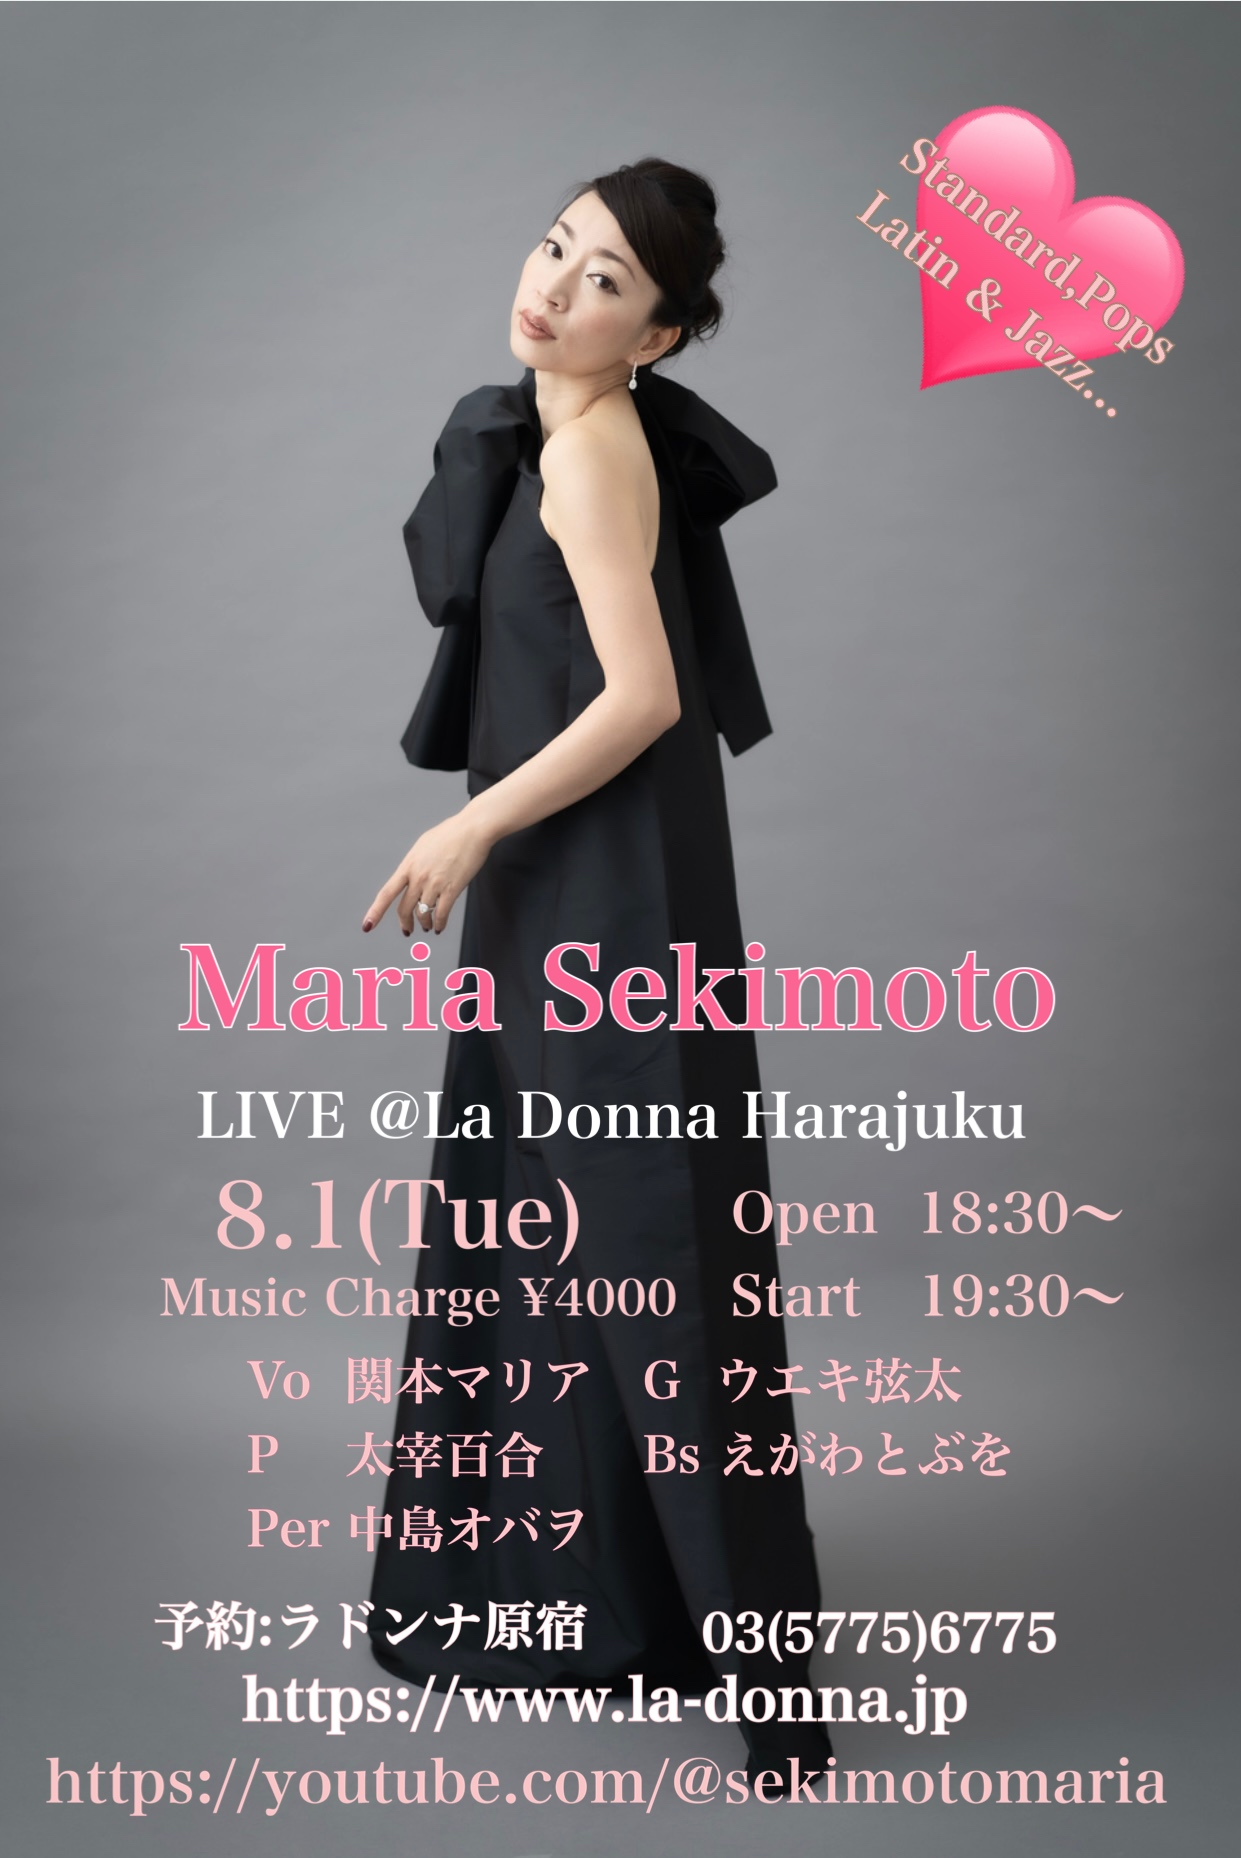 Maria Sekimoto LIVE @La Donna Harajuku